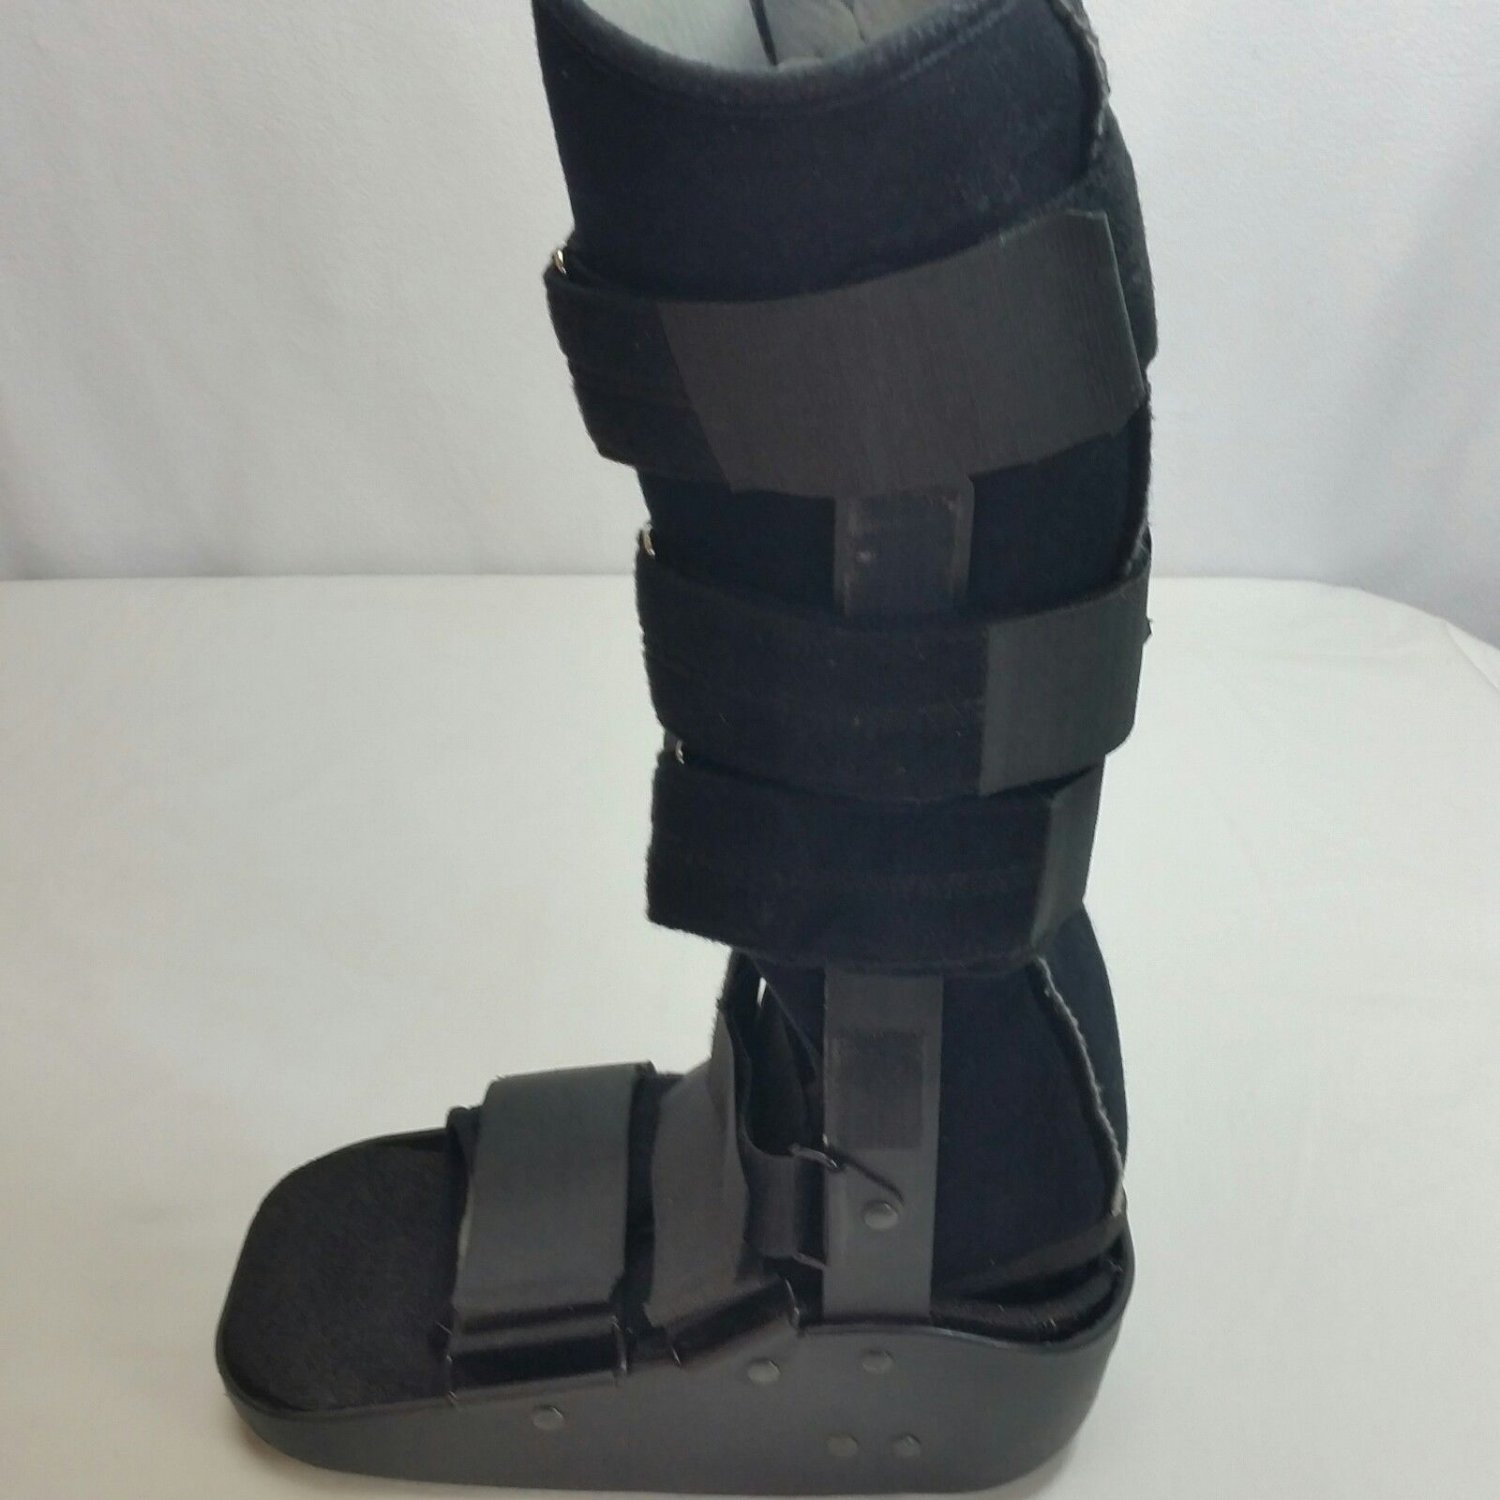 MaxTrax Orthopedic Walking Boot Brace DJO, LLC Foot Brace - medium